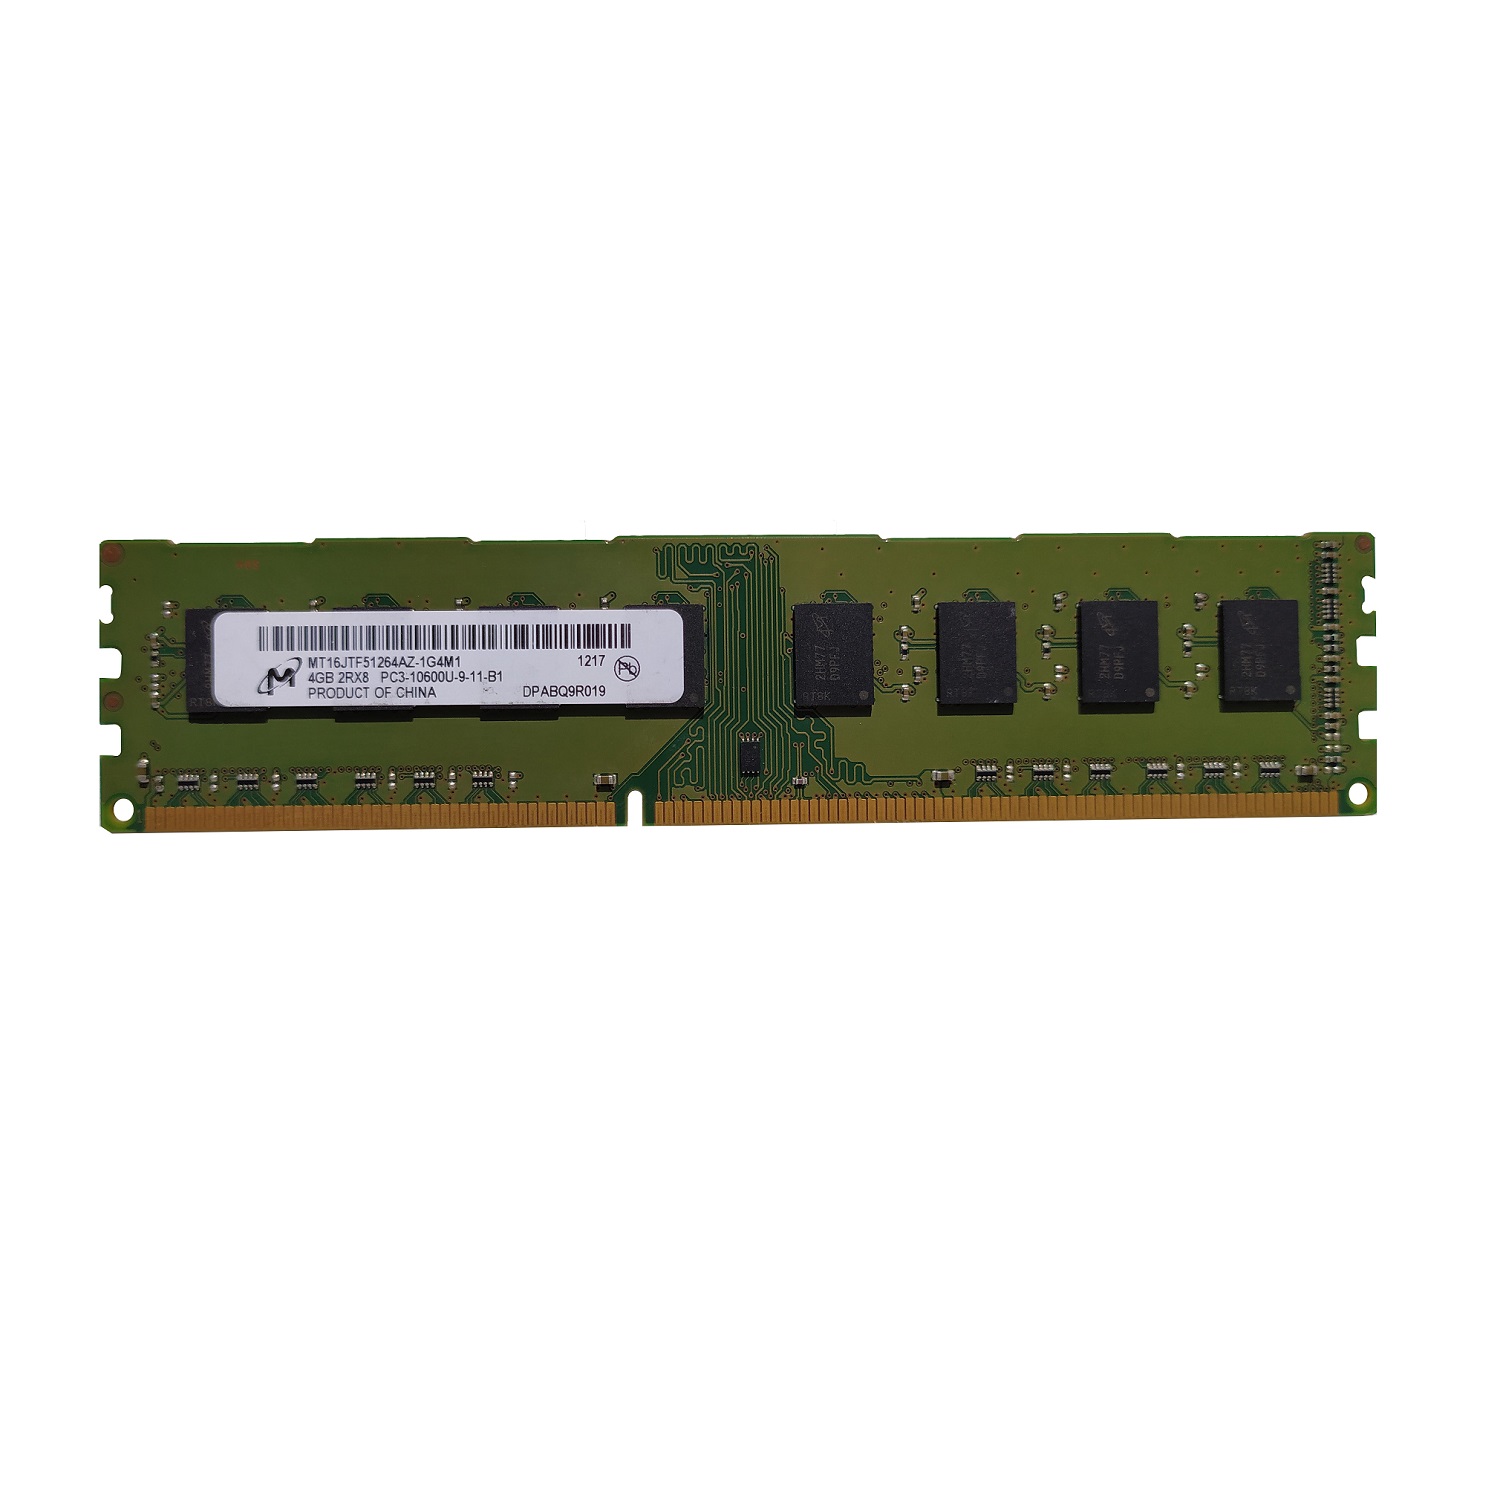 رم کامپیوتر DDR3 تک کاناله 10600 مگاهرتز میکرون مدل MT16JTF51264AZ-1G4M1 ظرفیت 4 گیگابایت